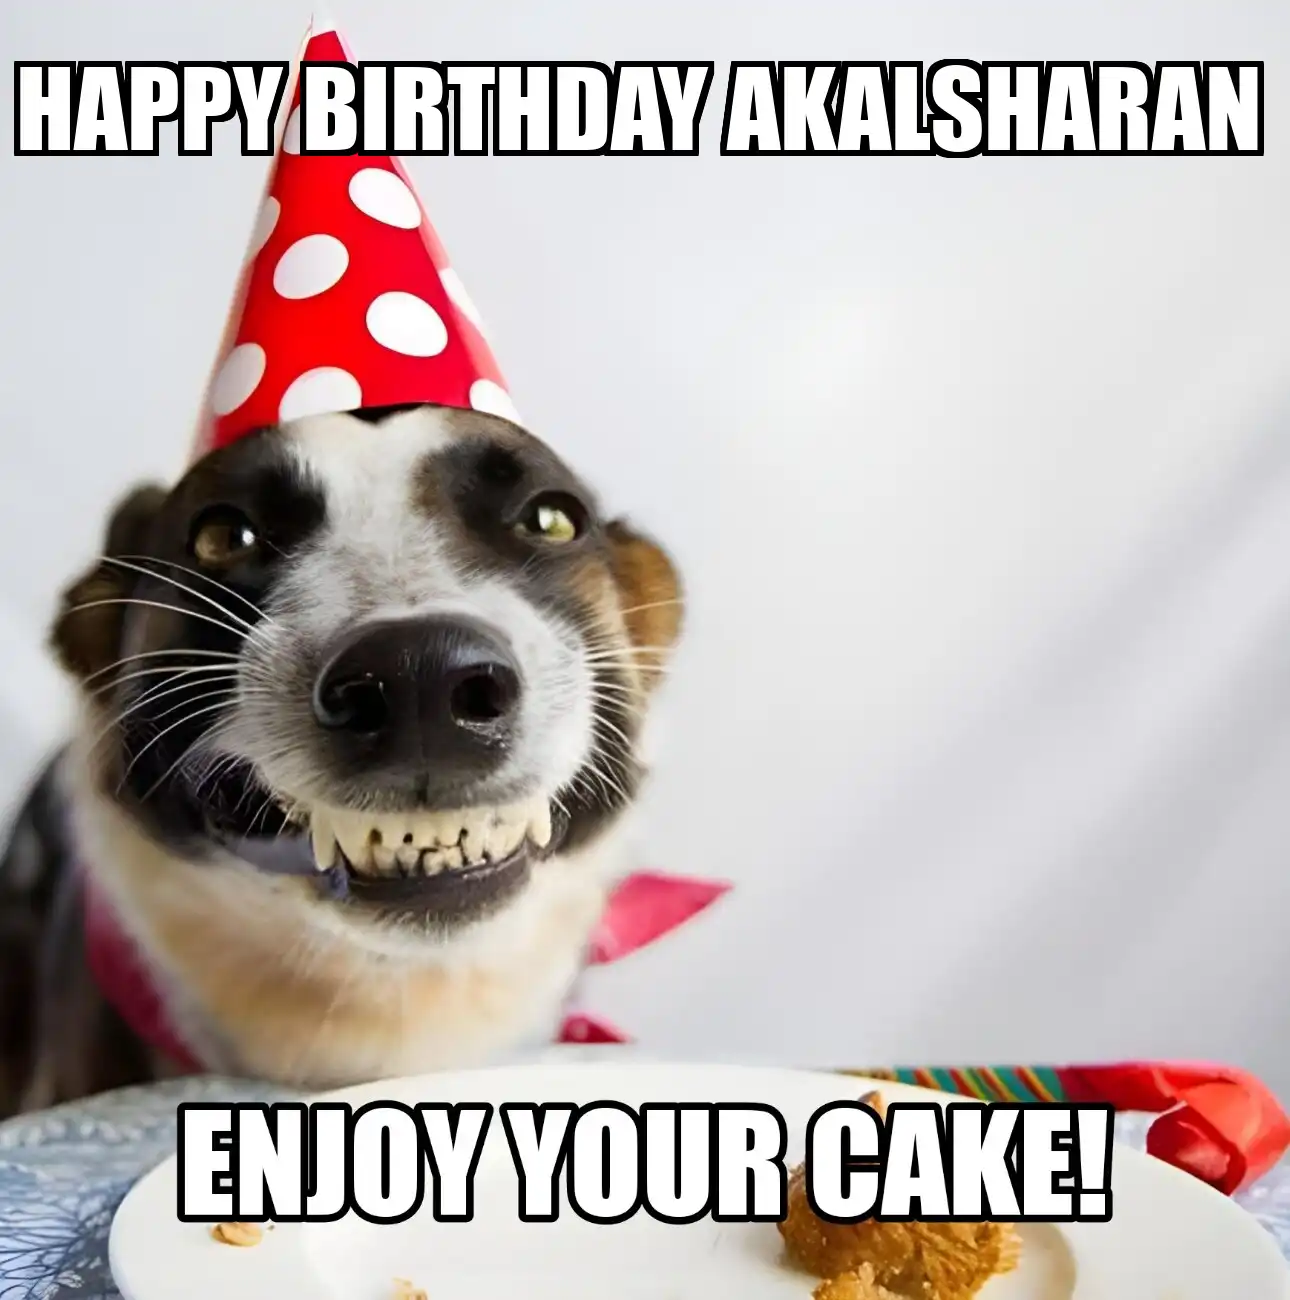 Happy Birthday Akalsharan Enjoy Your Cake Dog Meme